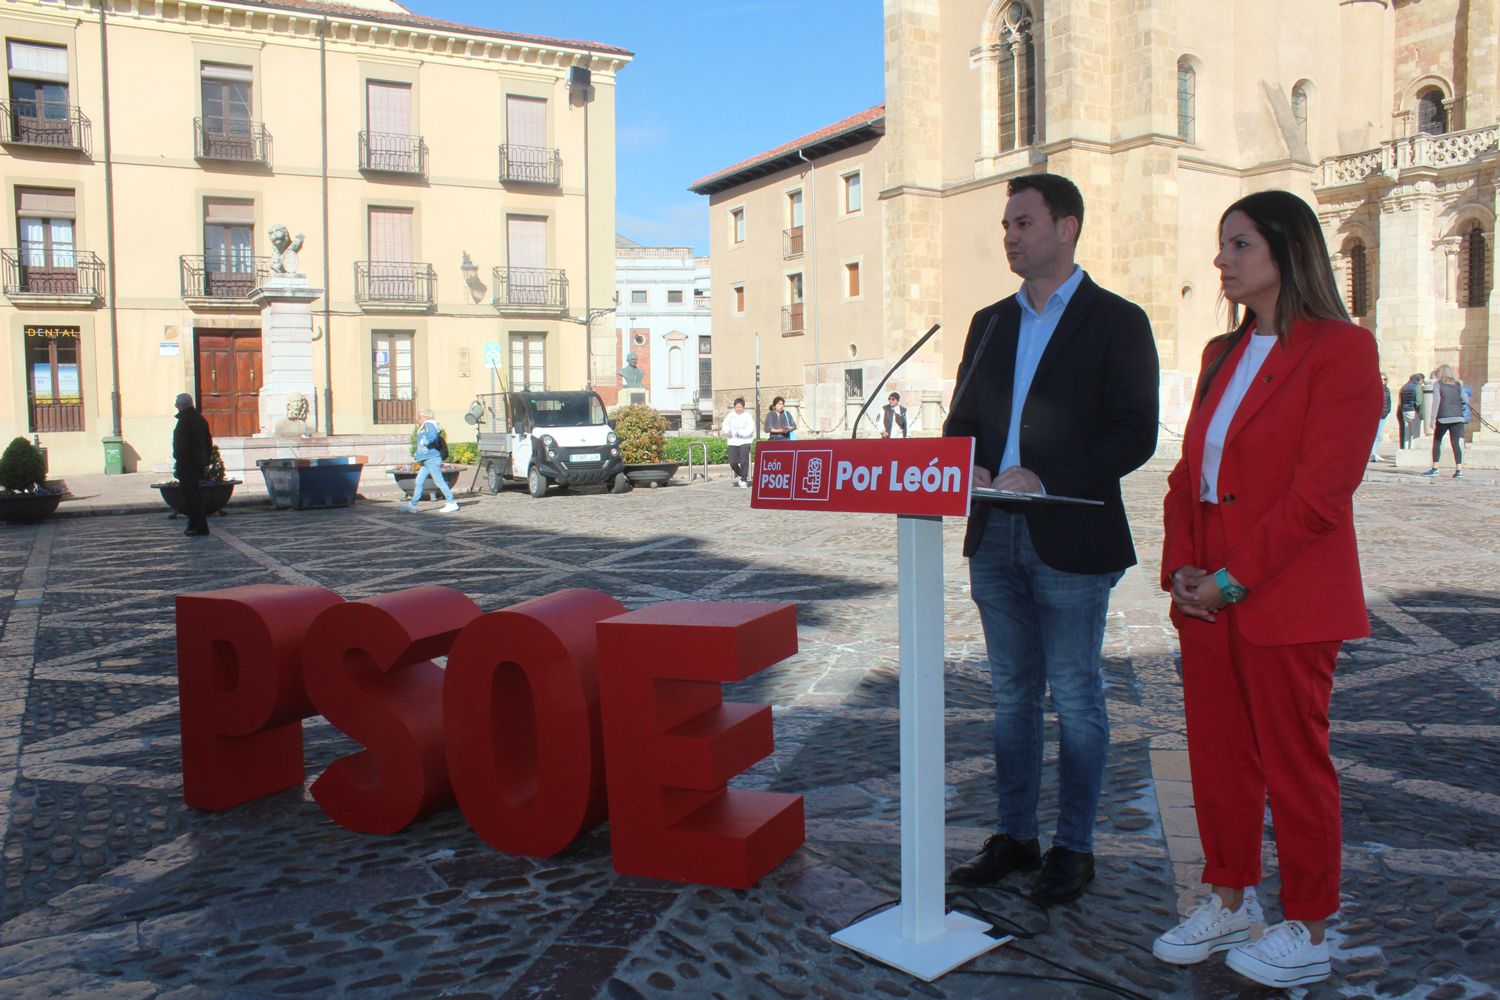 El PSOE buscará el reconocimiento de la identidad leonesa proponiendo el día 18 de abril como fiesta de la Comunidad